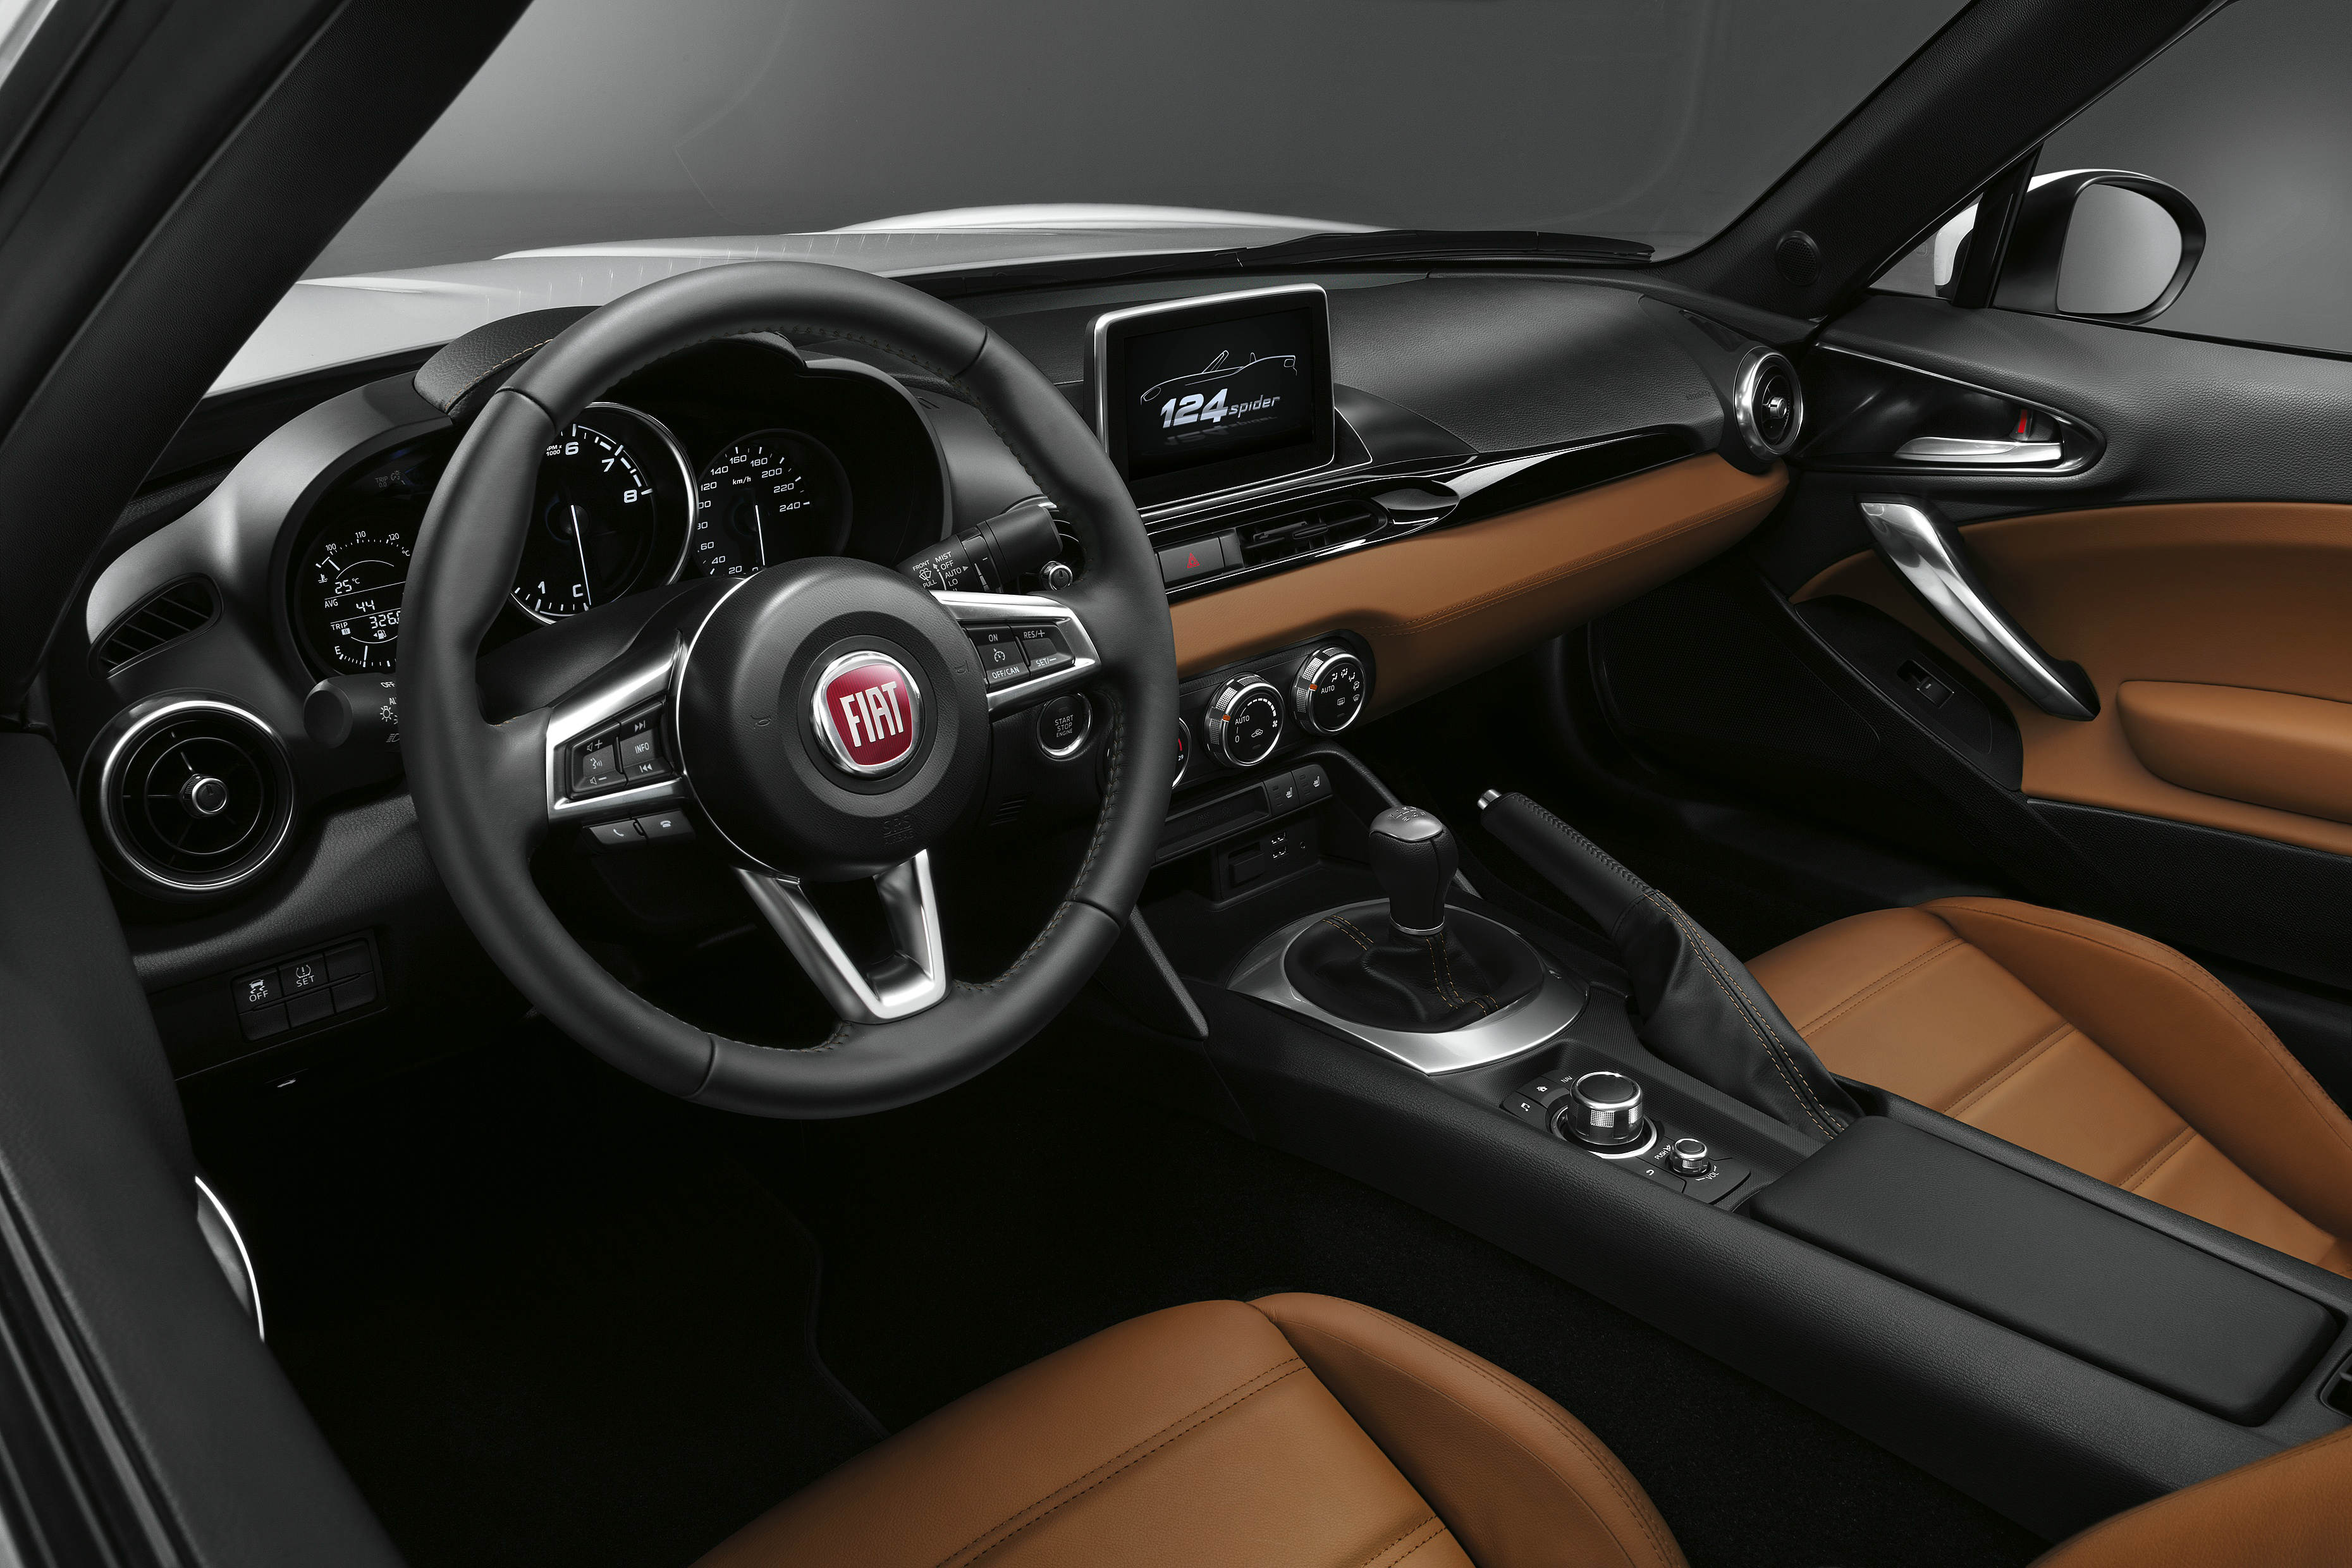 2015 Fiat 124 Spider interior